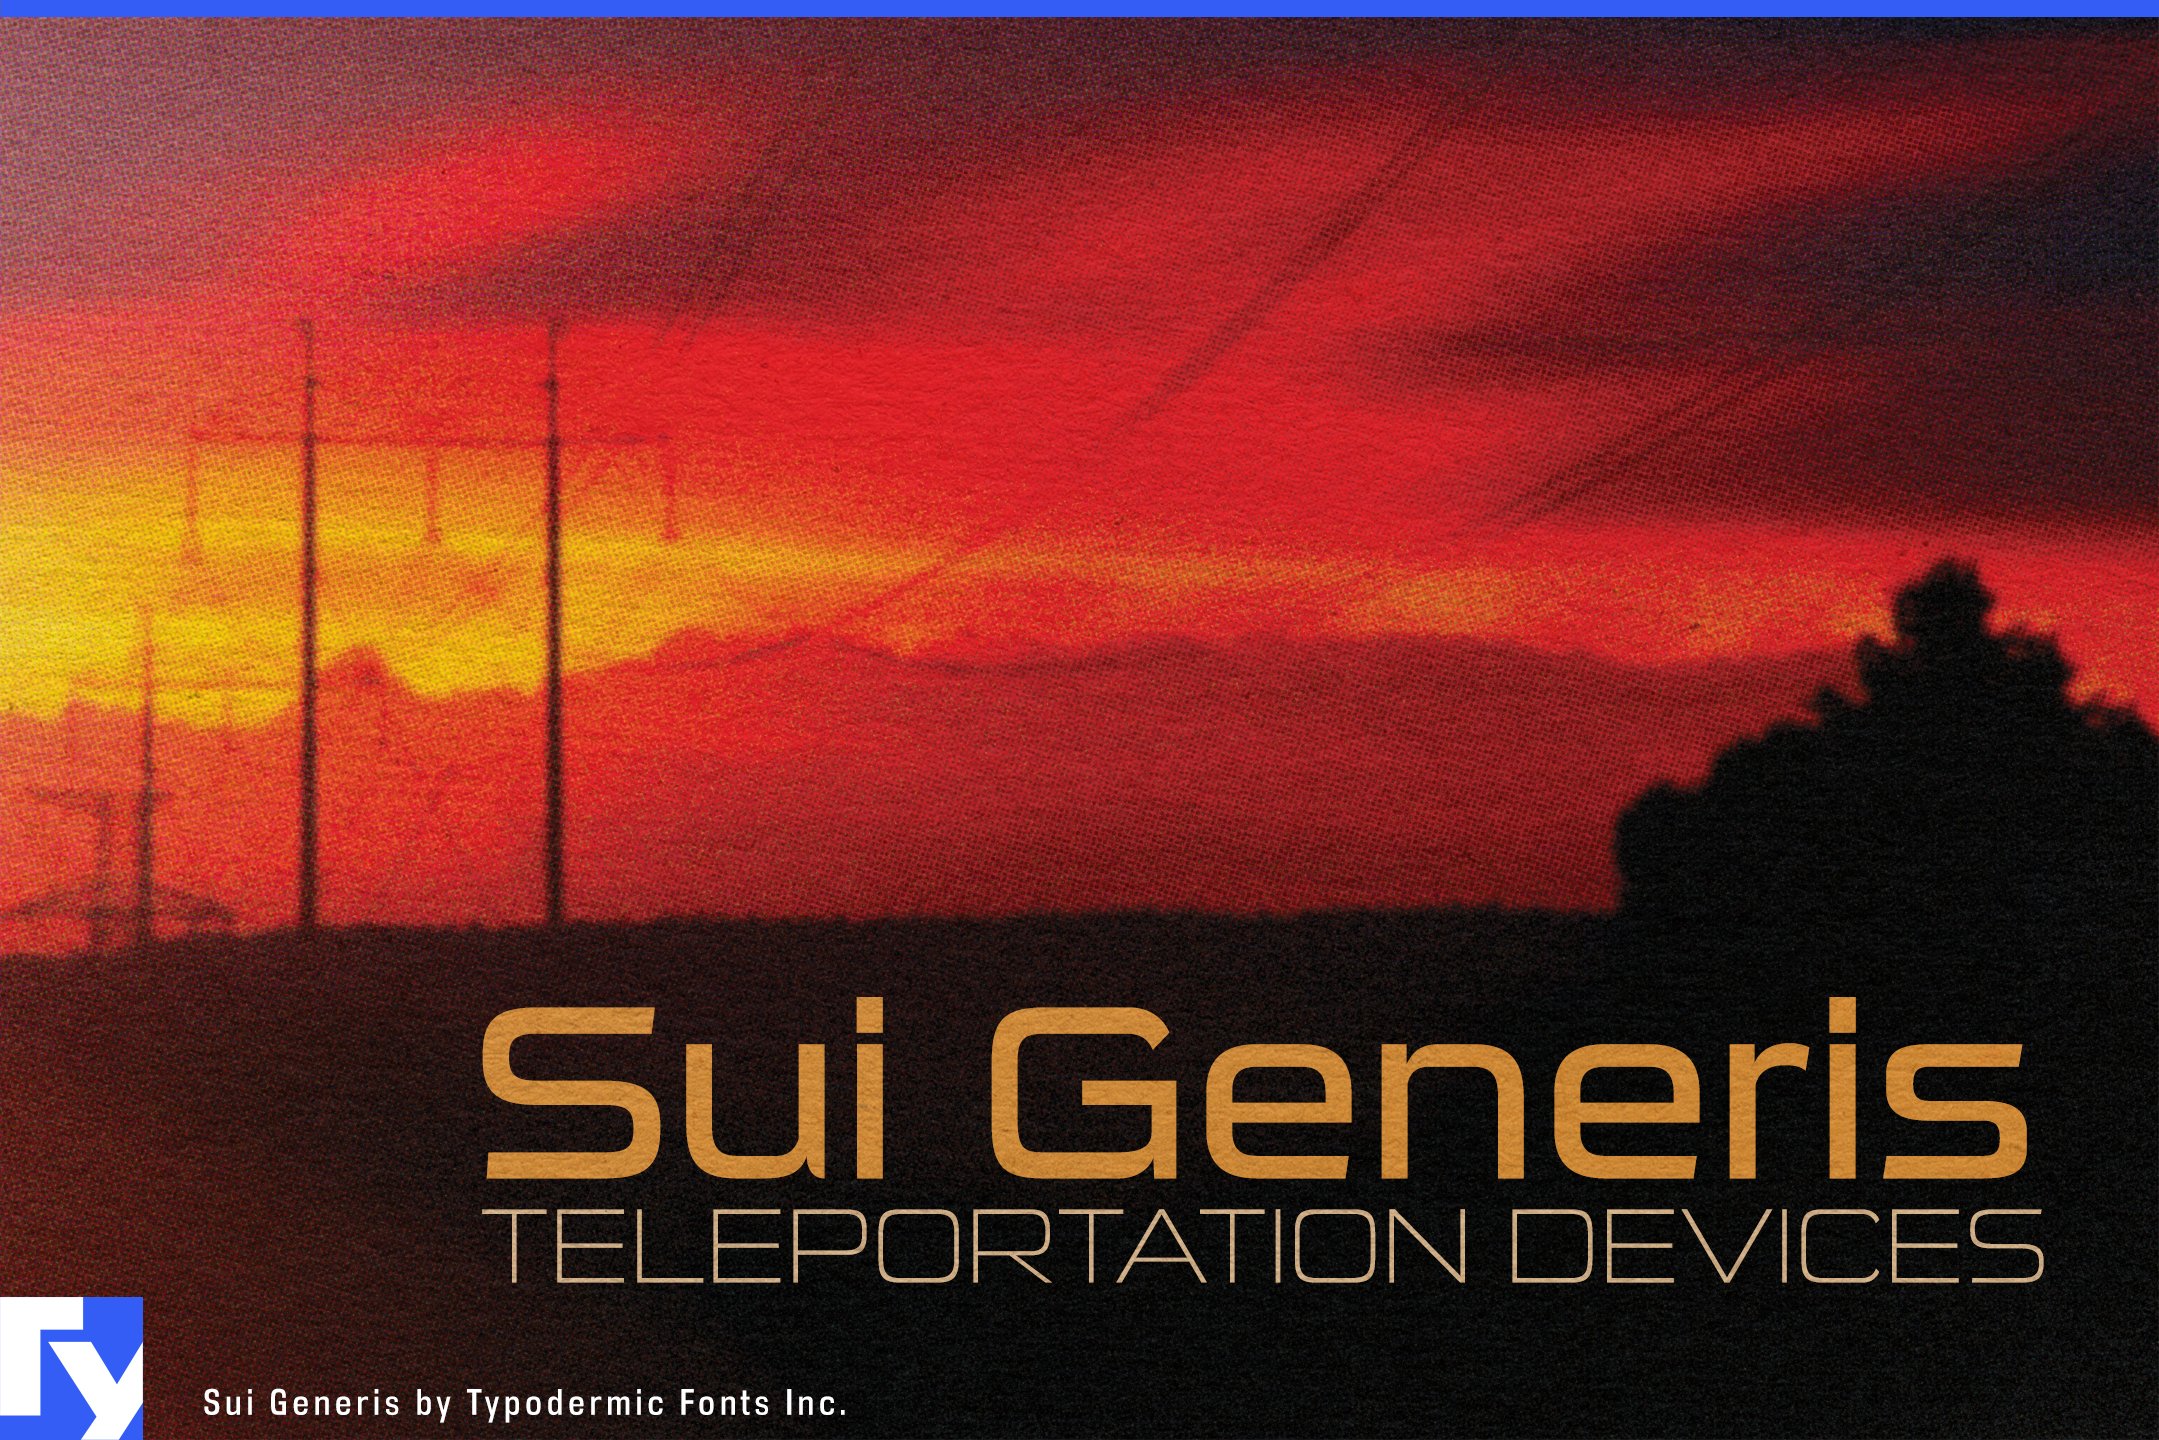 Sui Generis cover image.